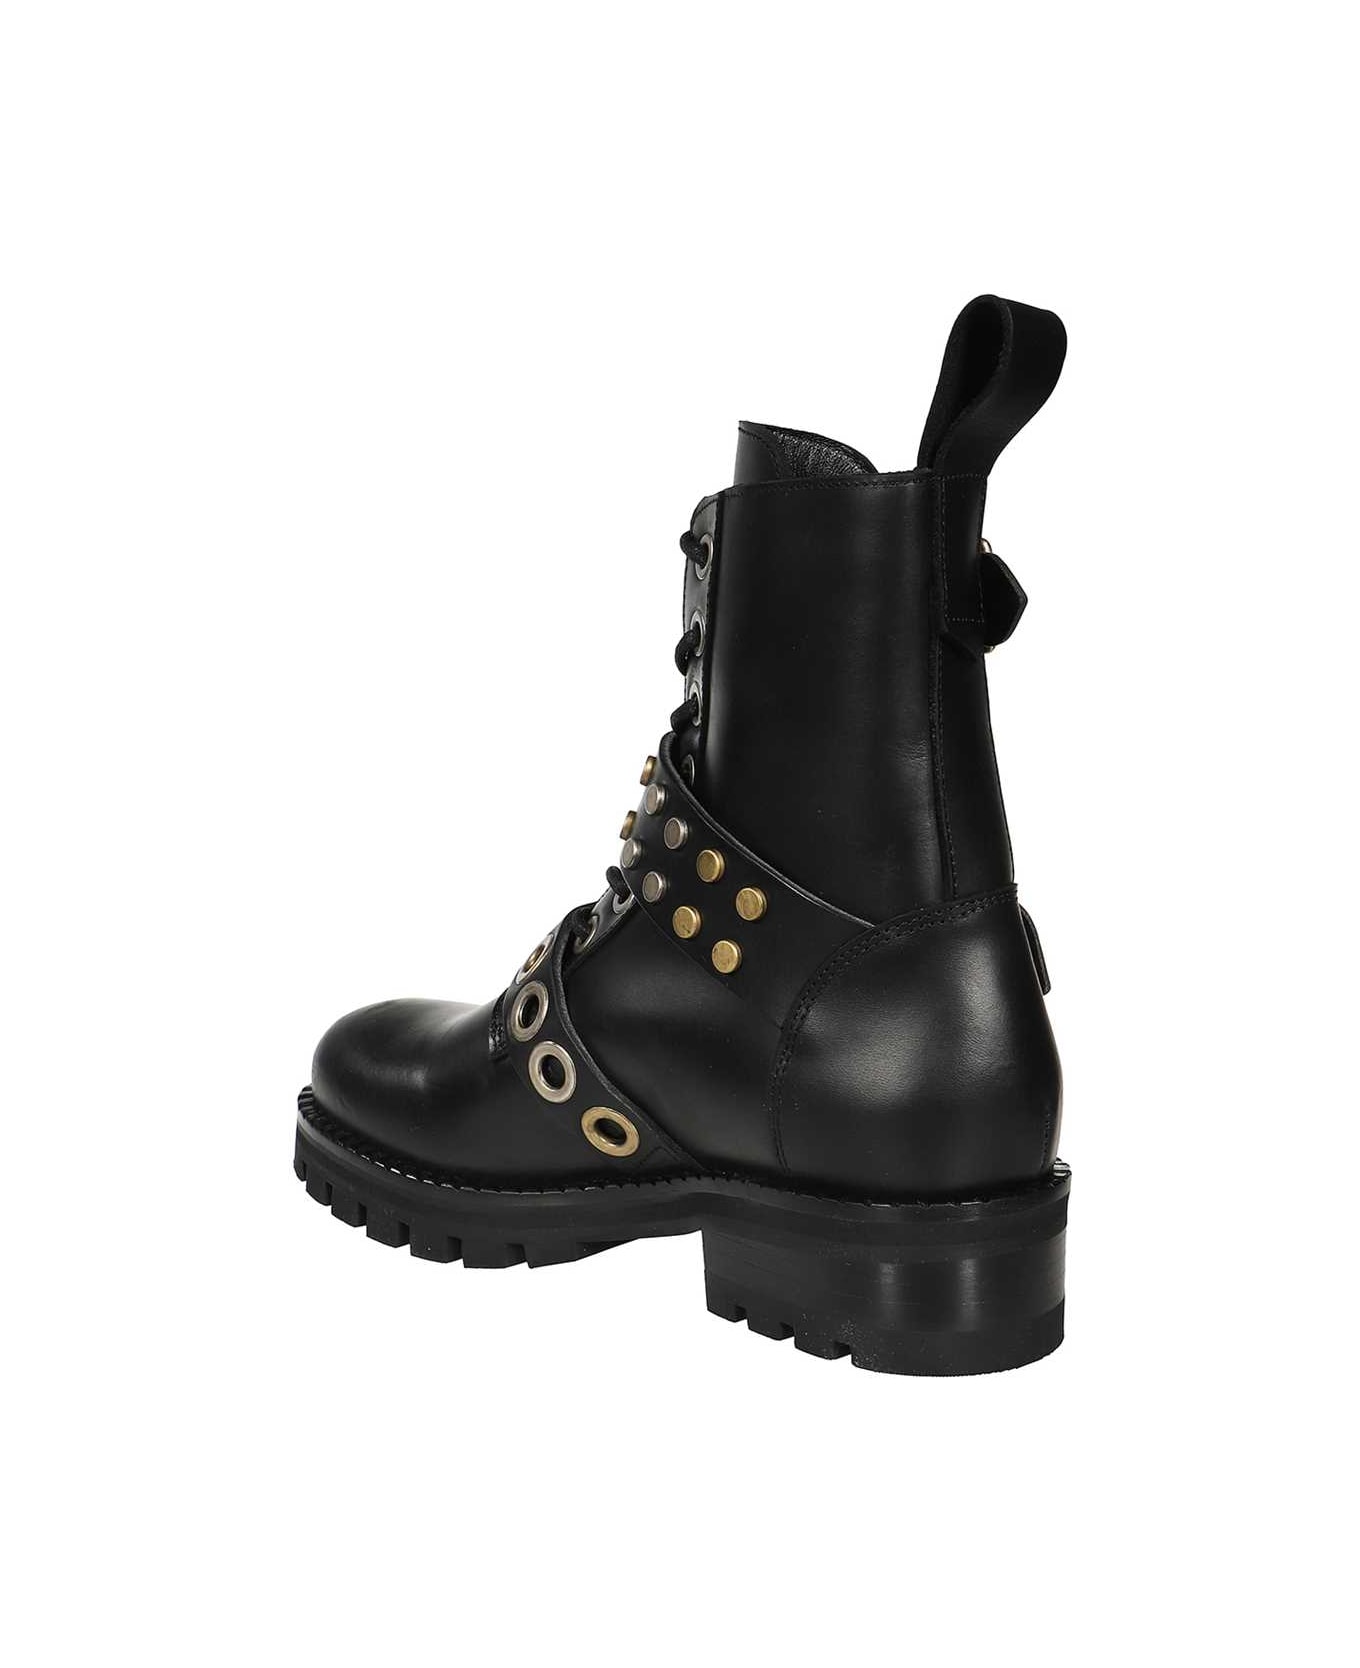 Vivienne Westwood Leather Combat Boots - black